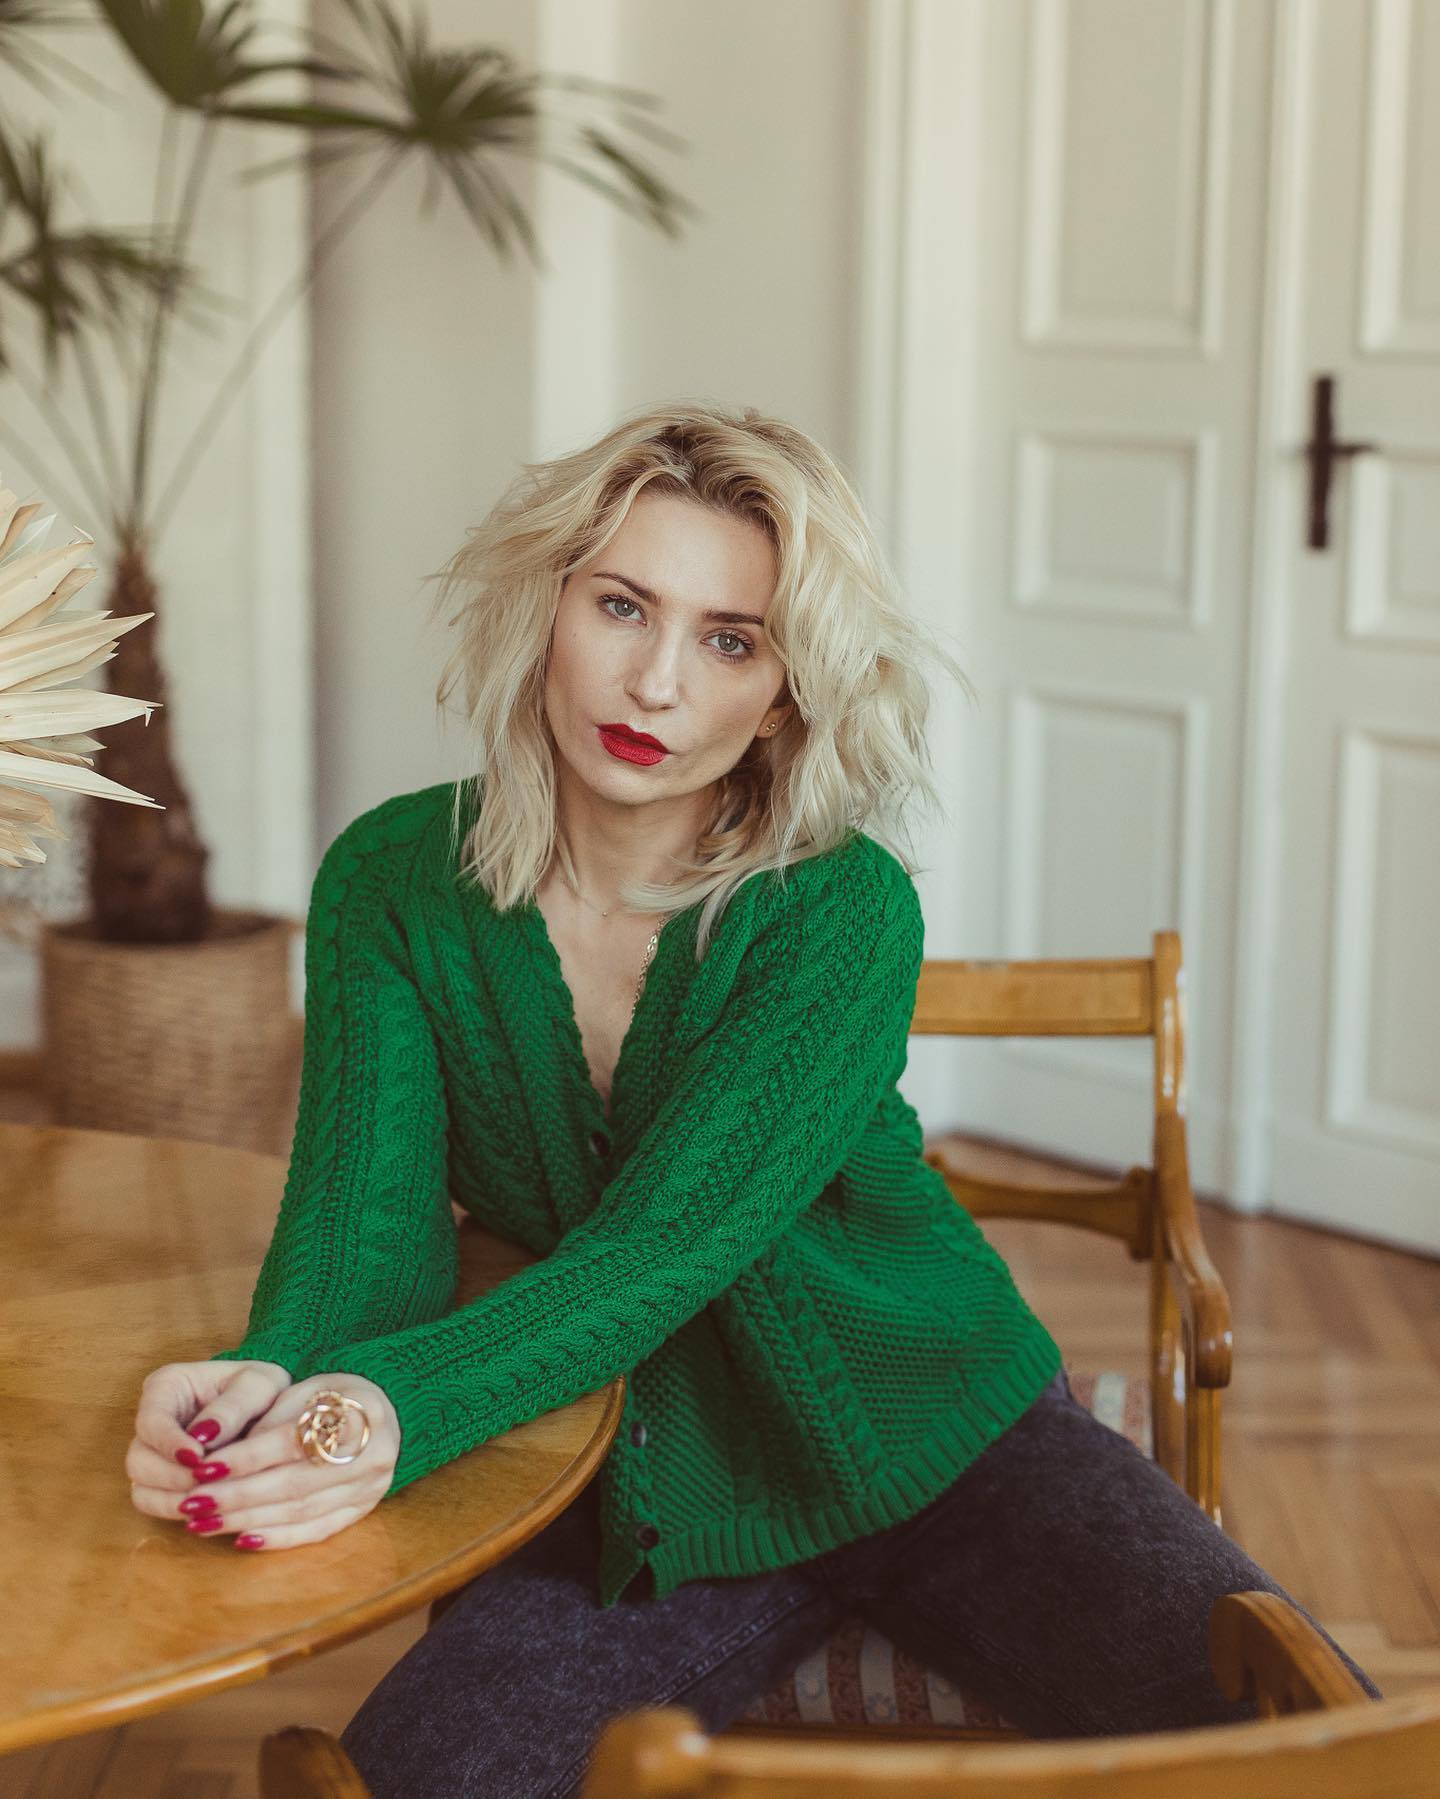 Ta zieleń jest totalna!!! Cieszę się, że stanowi podstawę najnowszej wiosenno-letniej kolekcji. Prezentację tejże rozpoczynam od kardiganu z drobnymi guzikami - modelu dobrze Wam znanego i niezmiernie lubianego 💚💚💚 
——————————————-
#Bienkovska #green #newcollection2022 #newcolor #knitwear #cottonknit #sweater #cardigan #newonboard #milenabienkowska #mystylediary #polishwoman #blondegirl #model #designer #madeinpoland #madeineurope #wemadeit #wemadeyourclothes #fairyrade #slowfashion #slowlife #greencardigan #kochamswetry #swetry